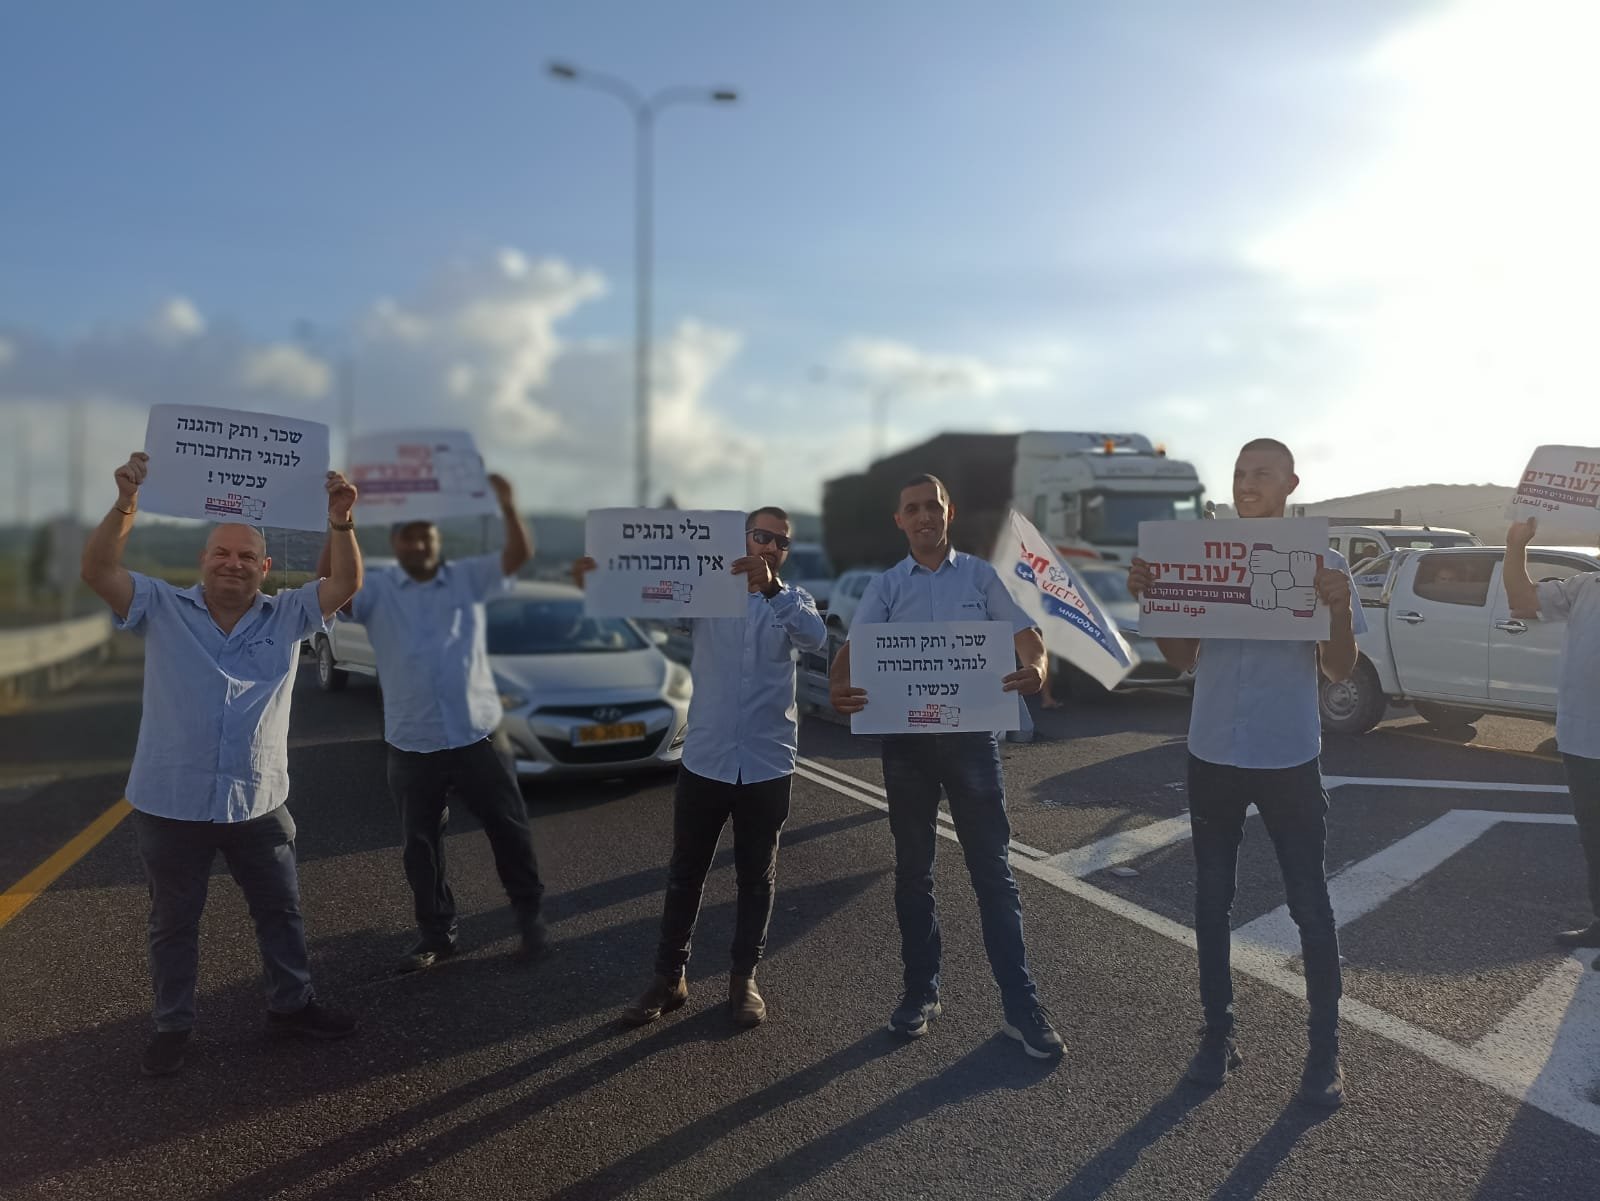 احتجاجات الأجور: سائقو الحافلات يغلقون الشوارع واضراب جزئي في مدراس لواء حيفا-2